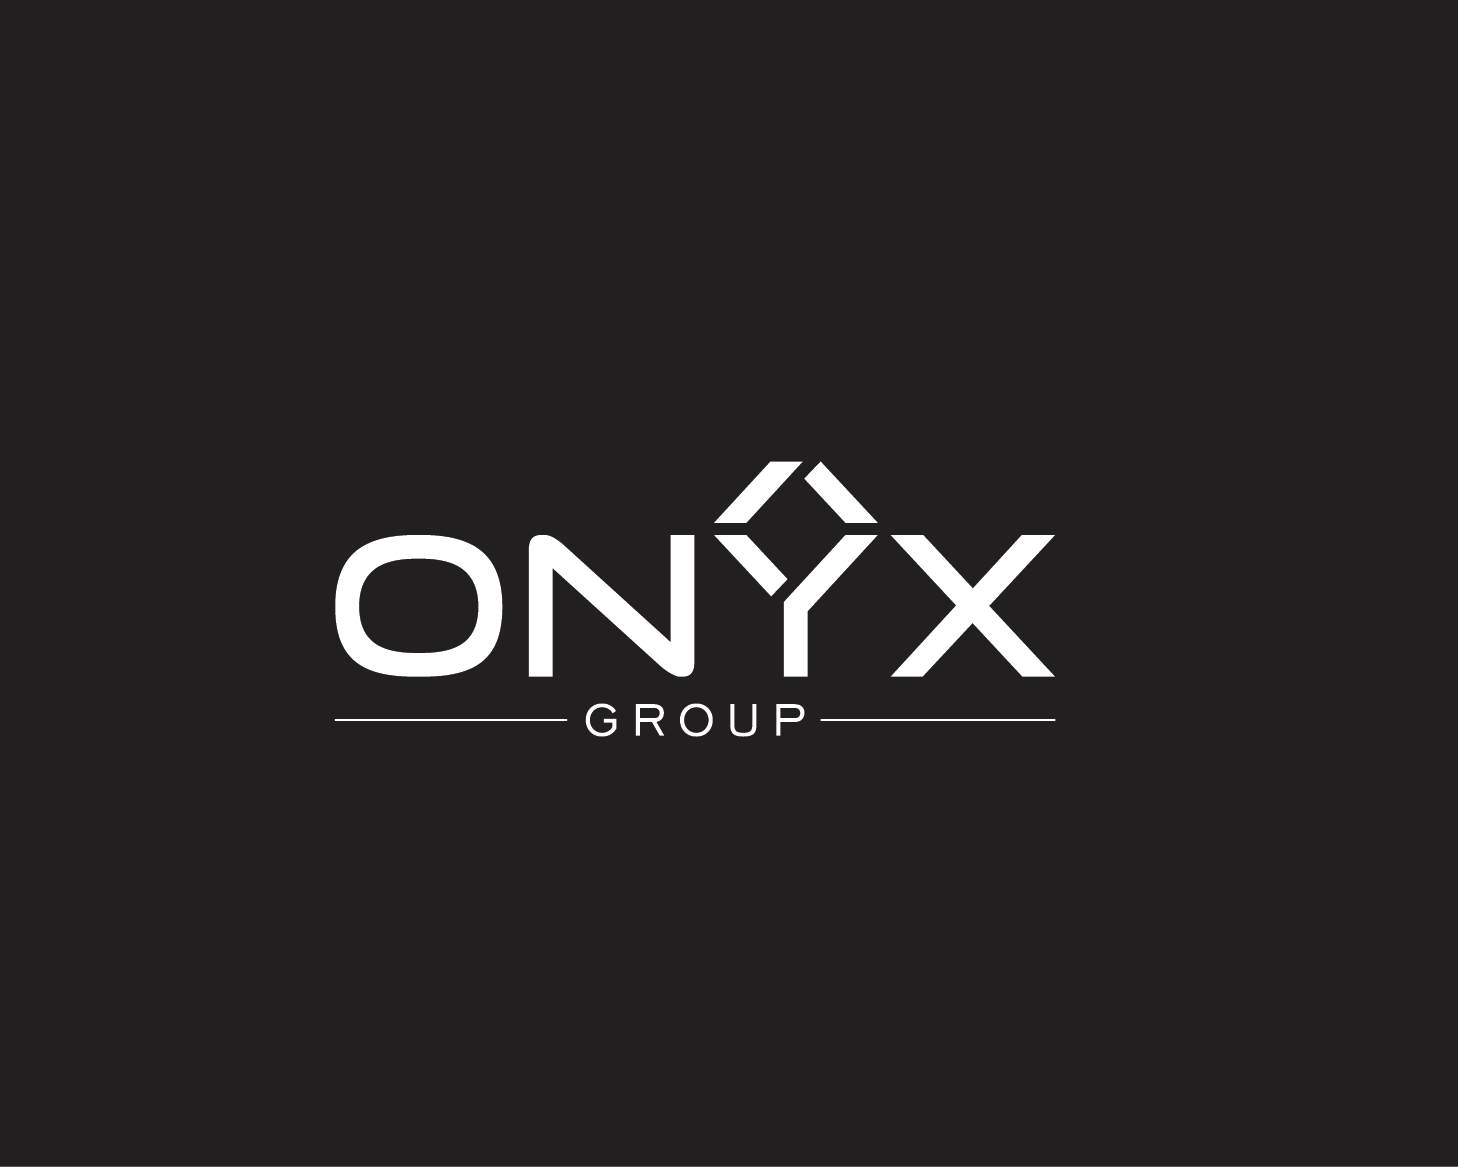 Onyx Logo - Elegant, Playful, Group Logo Design for ONYX GROUP